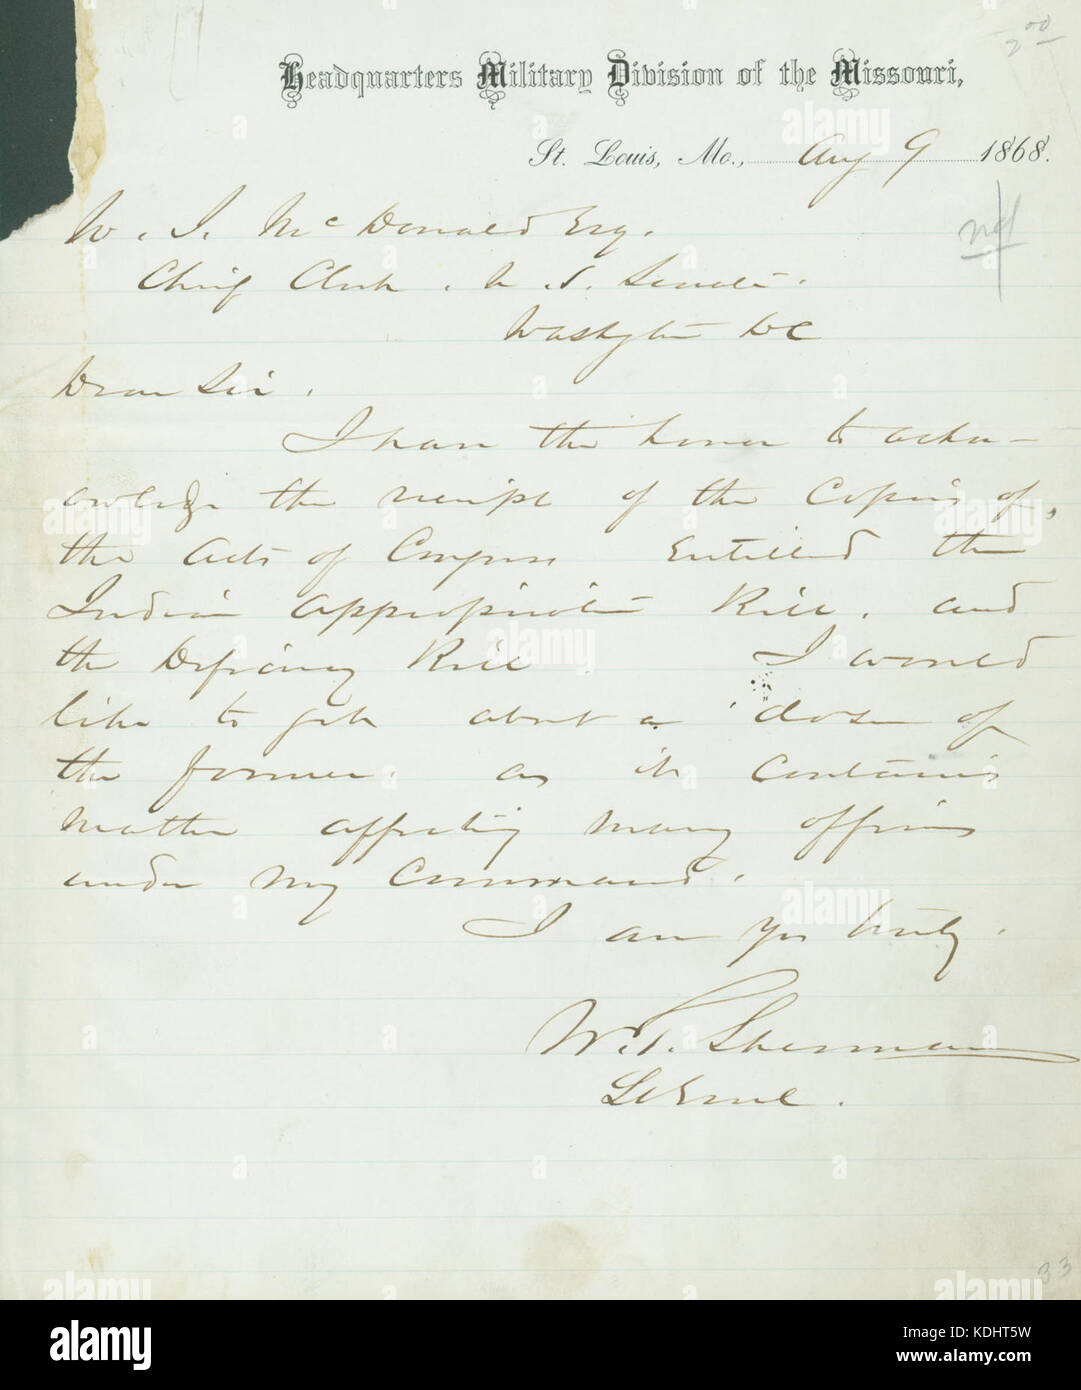 Lettre signée W.T. Sherman, siège de la Division militaire du Missouri, Saint Louis, Mo., de W.I. McDonald, greffier en chef du Sénat des États-Unis, Washington, D.C., le 9 août 1868 Banque D'Images